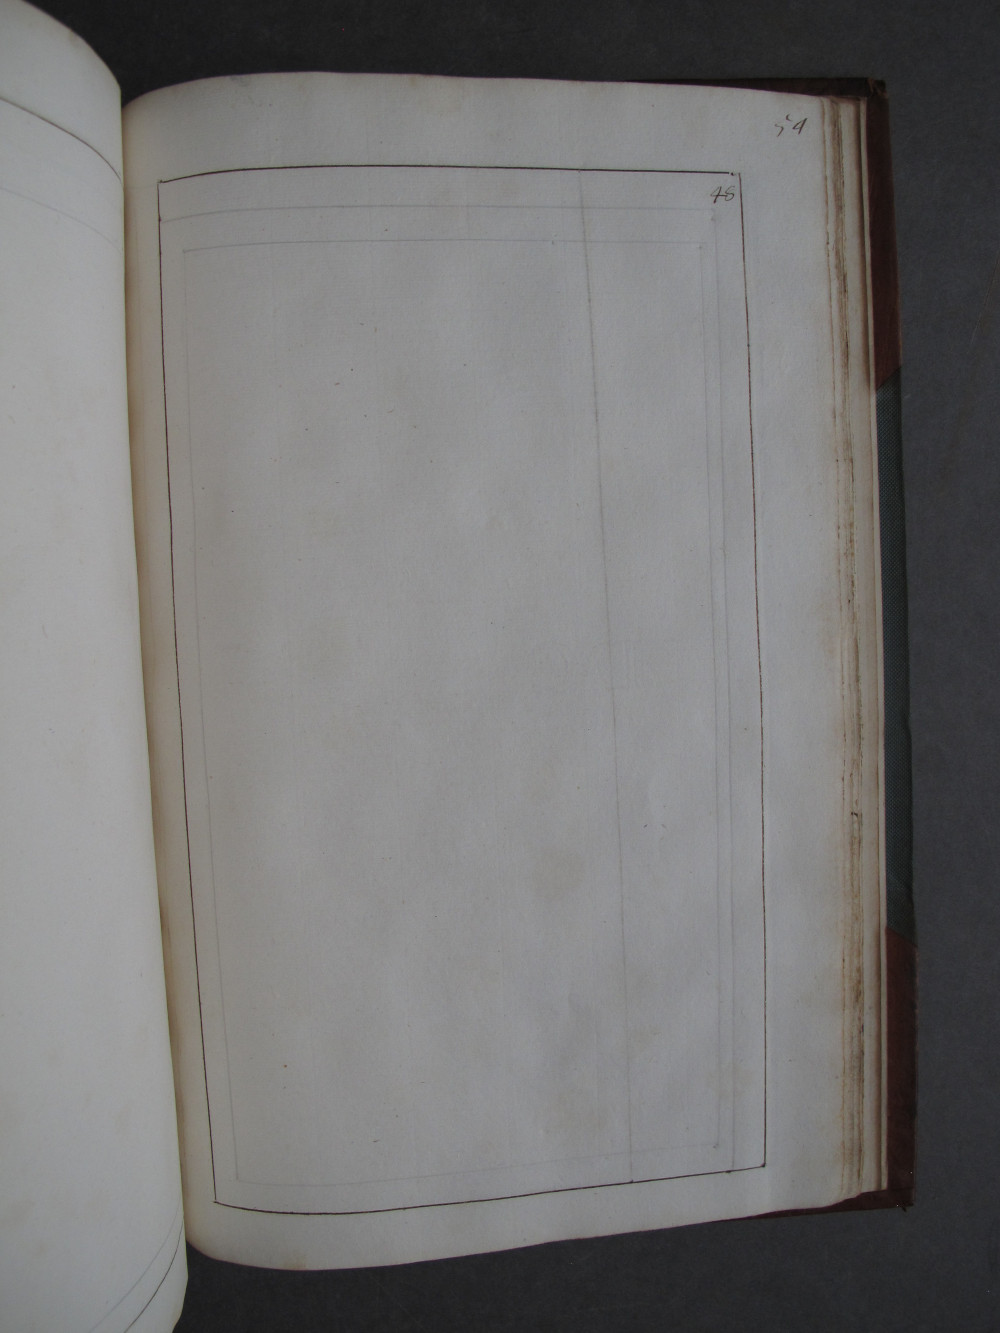 Folio 48 recto